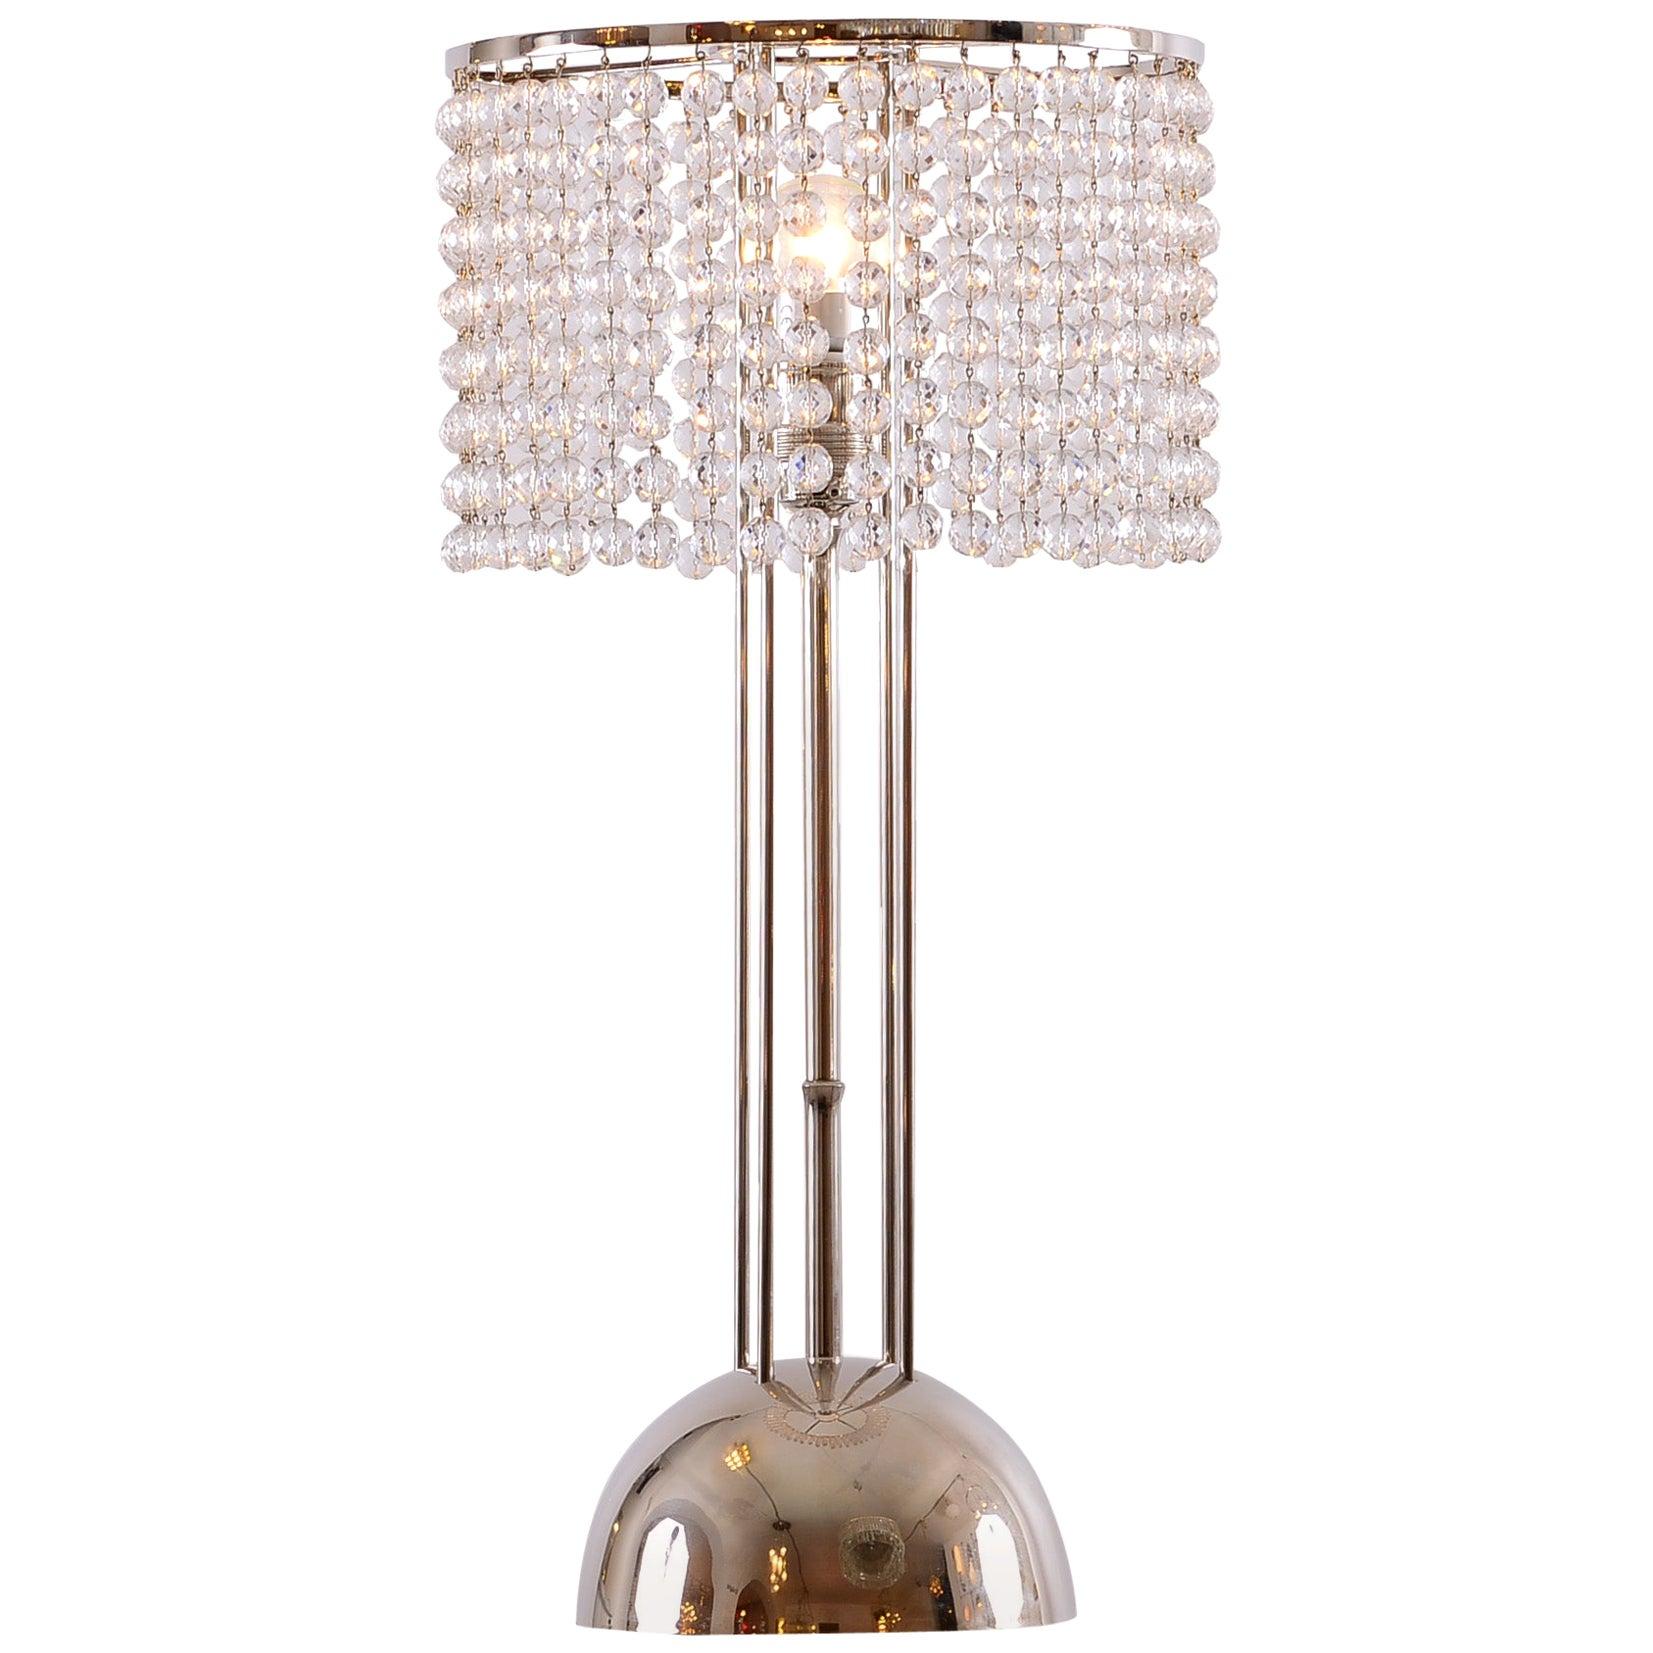 Josef Hoffmann Crystal Table Lamp Jugendstil Vienna Secession, Re Edtion For Sale